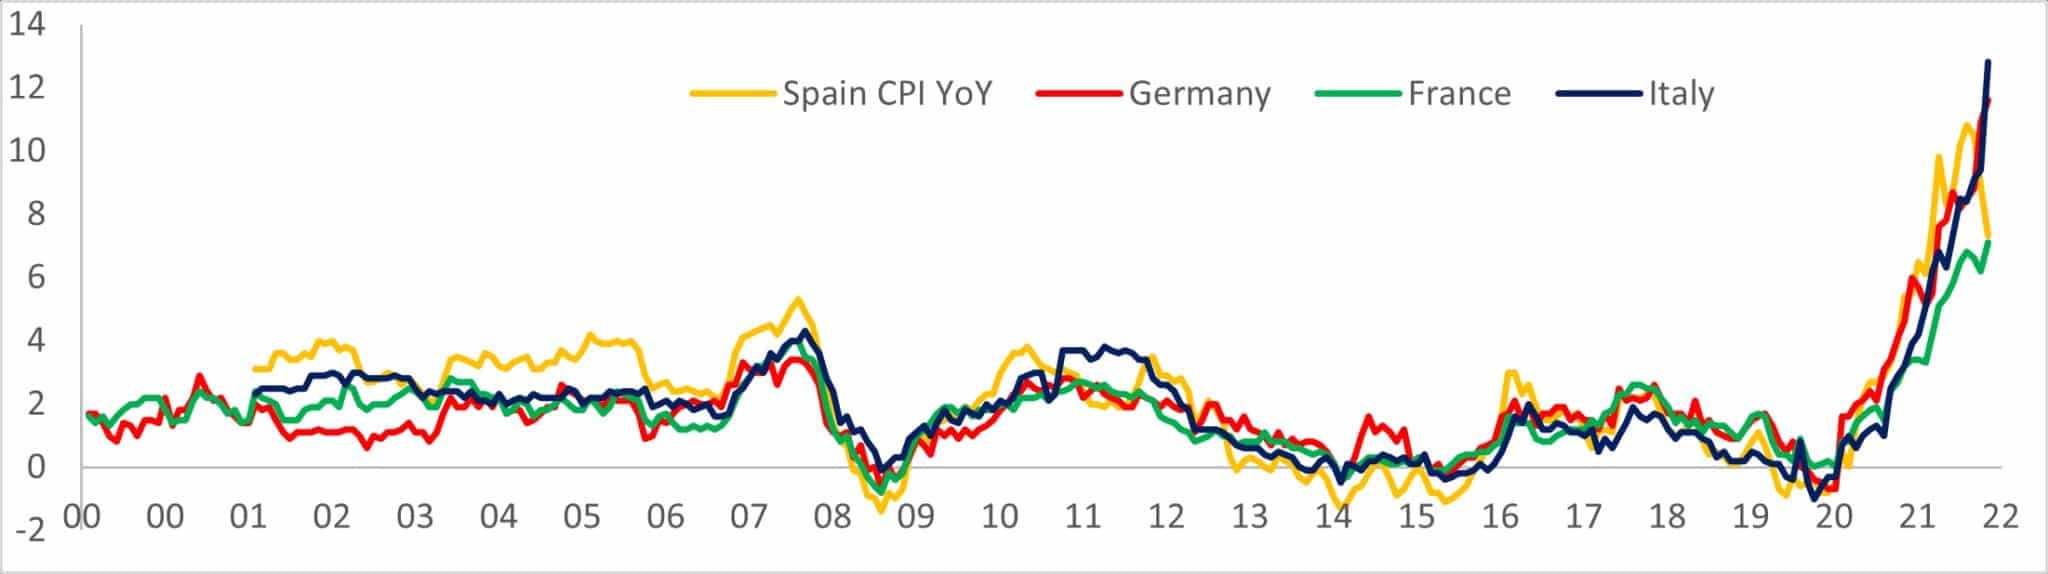 Wykres pokazujący wzrost CPI w ujęciu rocznym w Hiszpanii, Niemczech, Francji i Włoszech od 2000 do 2022 roku